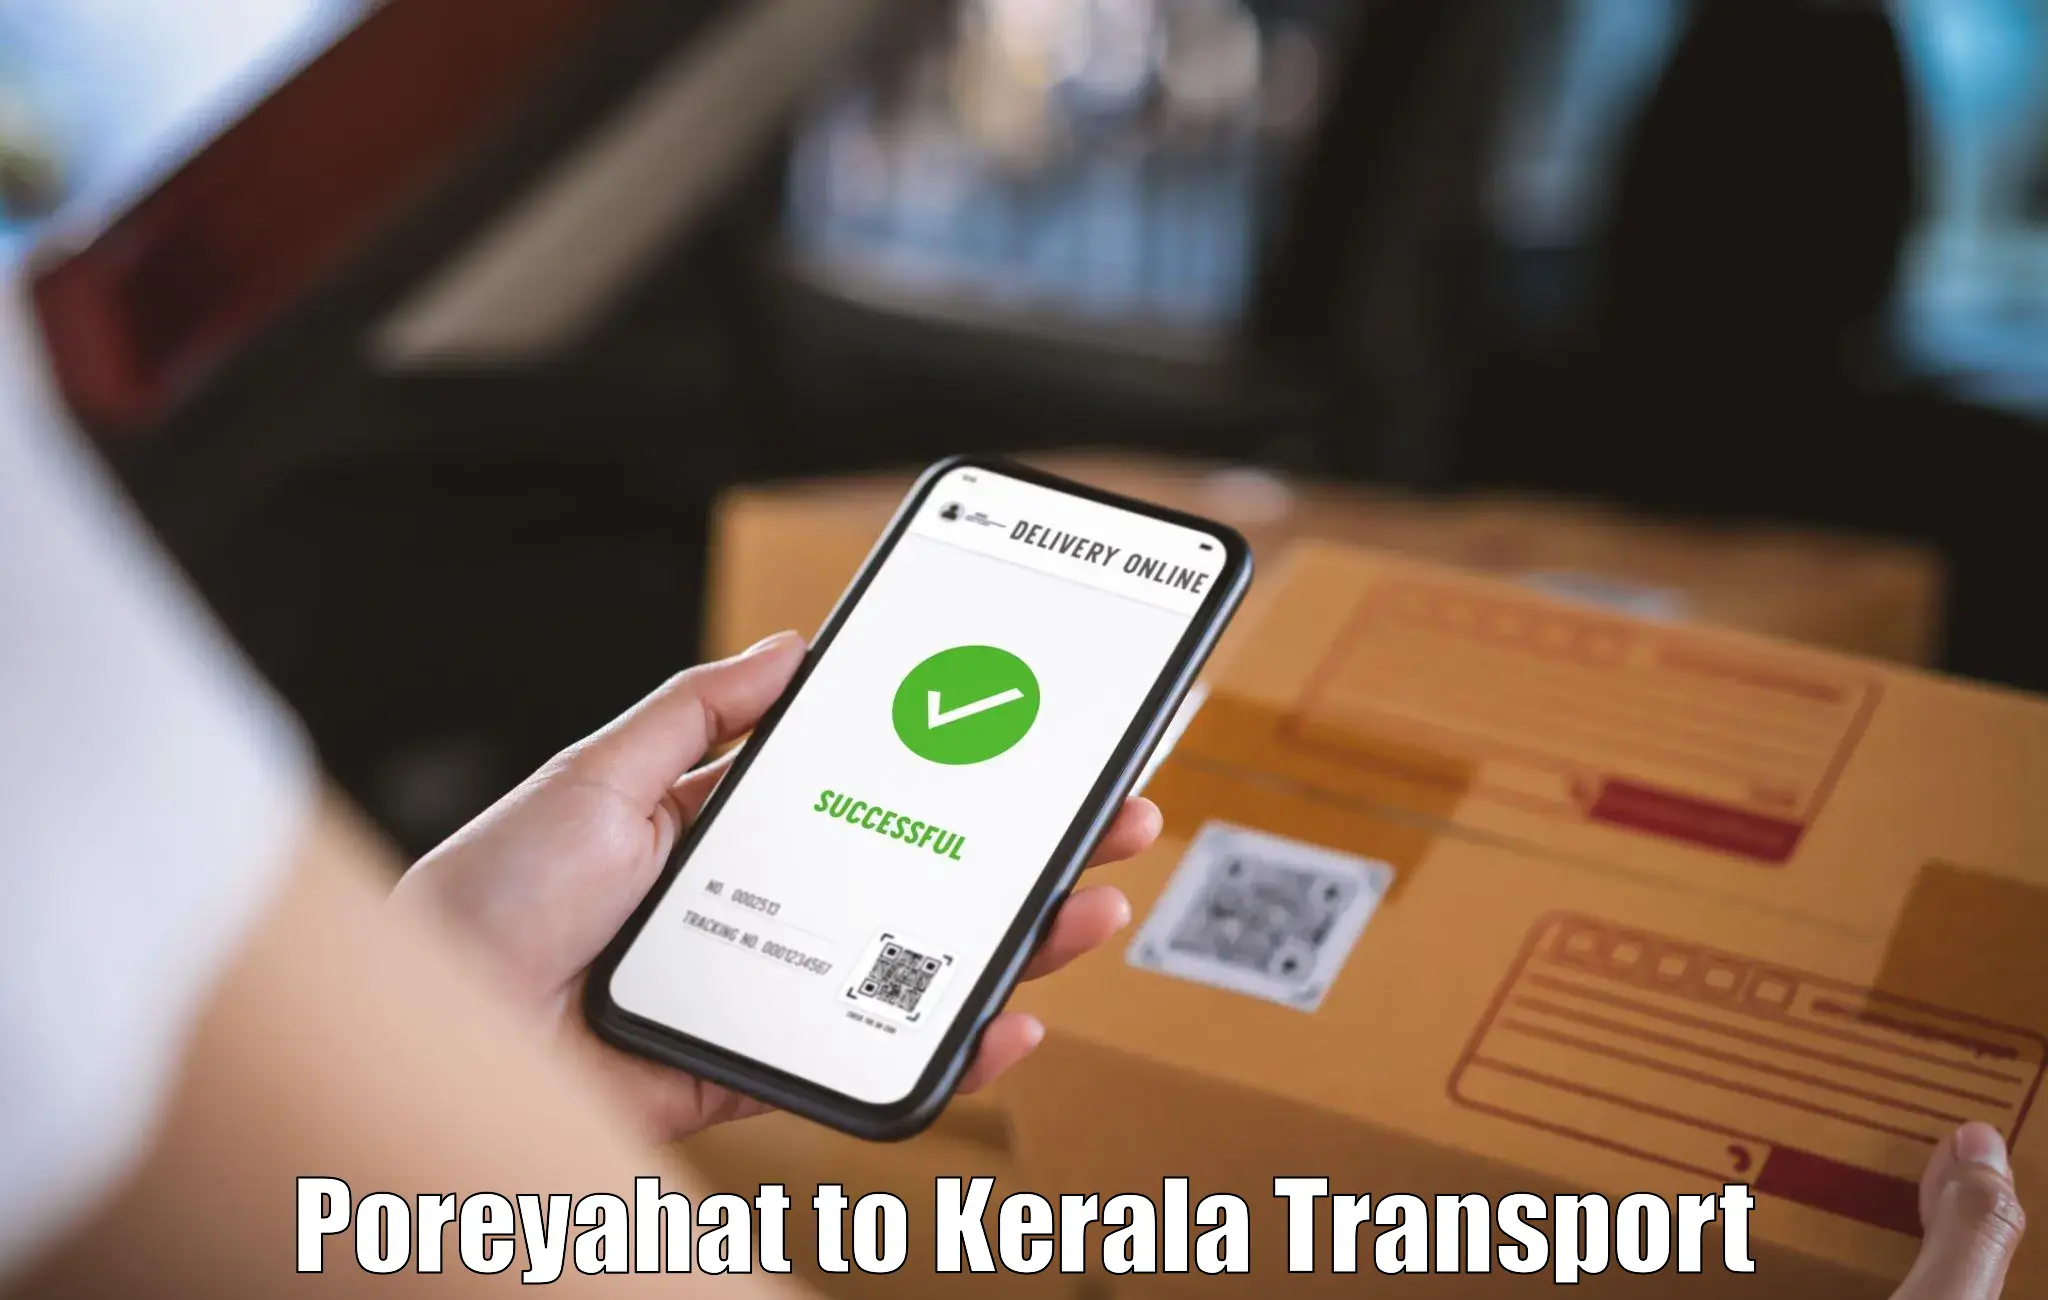 Transport services Poreyahat to Kothamangalam